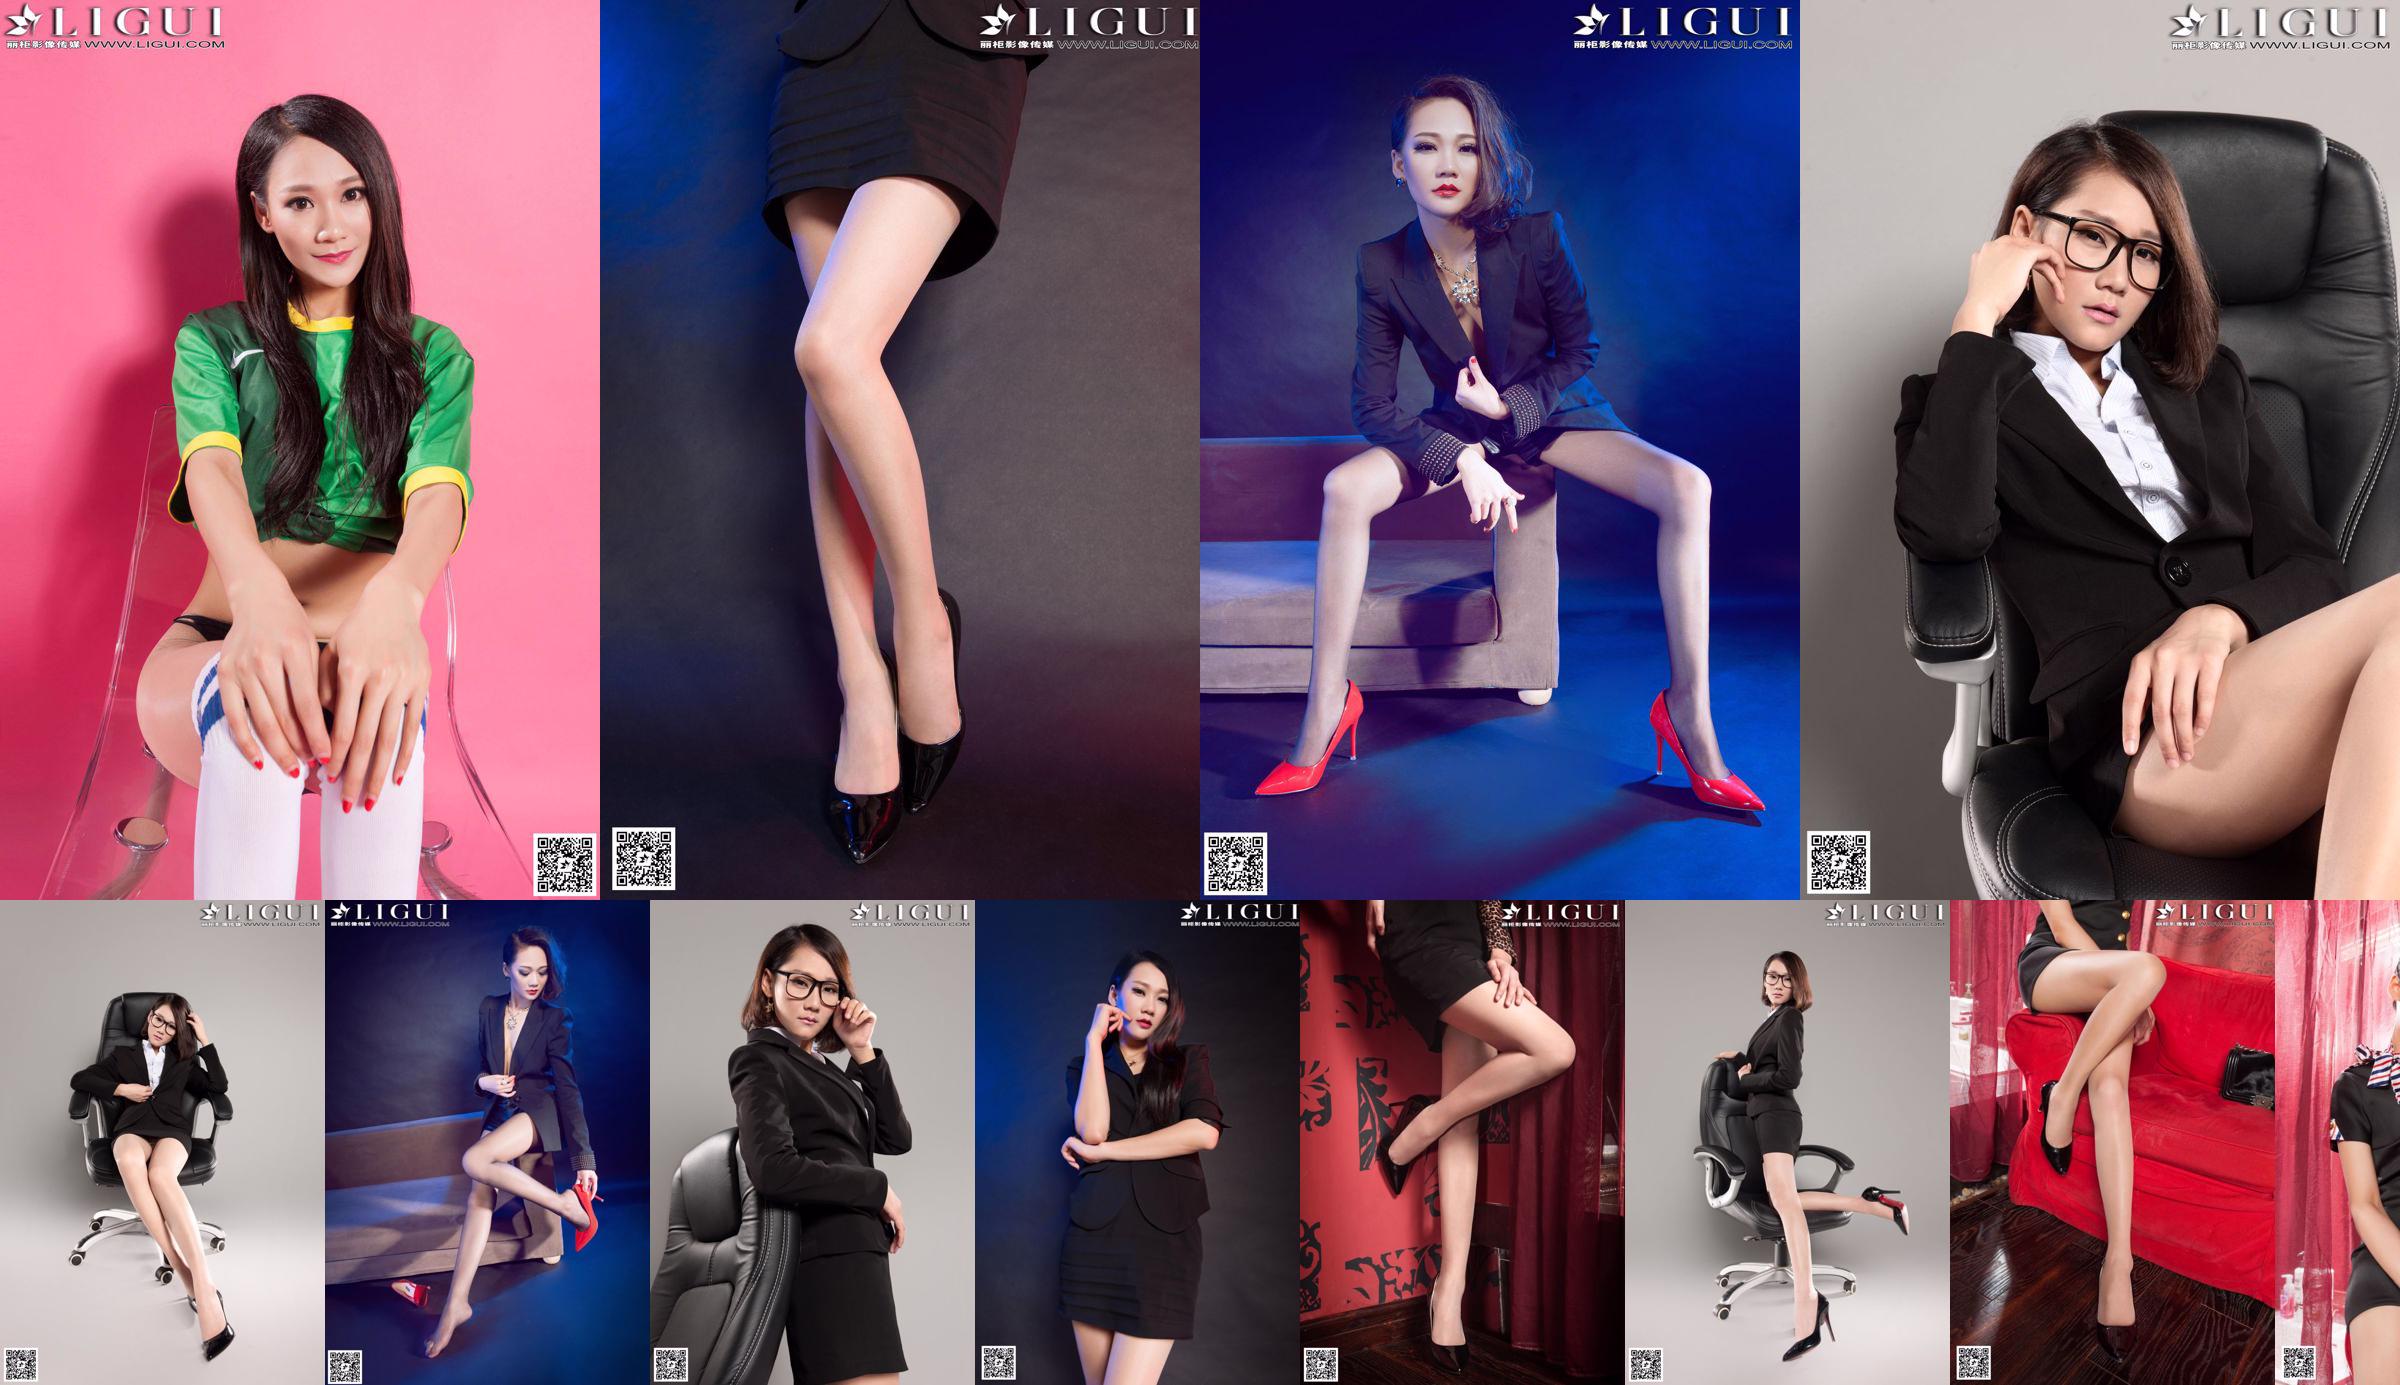 [丽 柜 LiGui] Bộ sưu tập đầy đủ các bức ảnh chụp chân ngọc và chân dài của người mẫu Mandy "Professional Wear high-shoe Feet" No.71be81 Trang 28